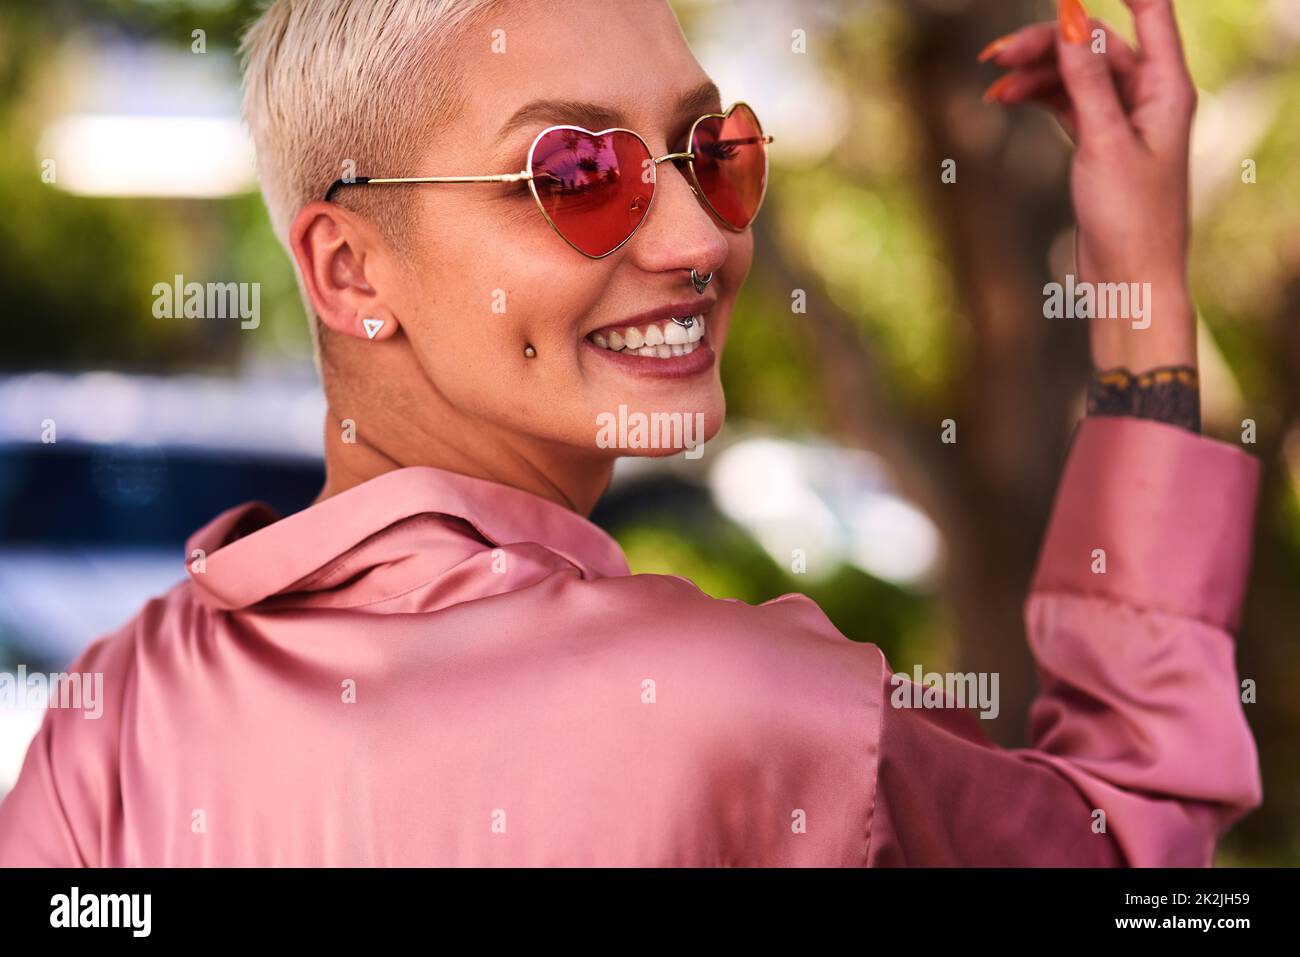 La felicità sembra buona su chiunque. Primo piano ritratto di una giovane donna attraente ed elegante che indossa occhiali da sole rilassante in un parco all'aperto. Foto Stock